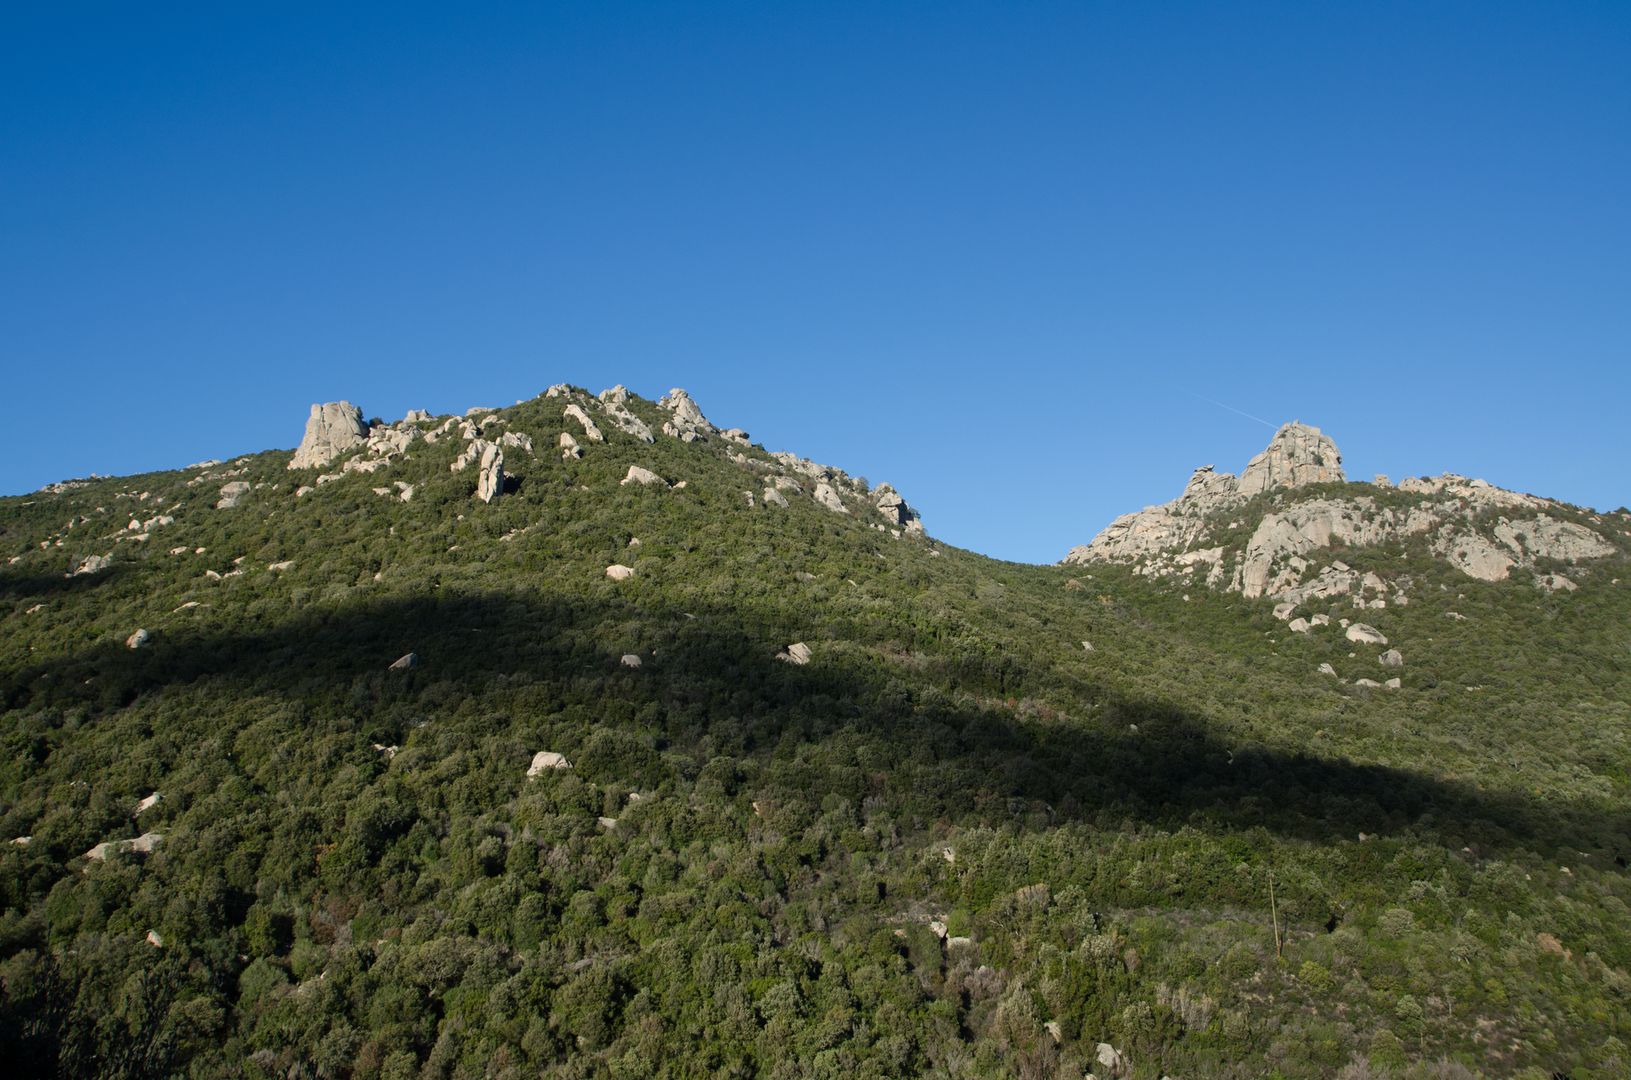 Antonio Concas - The high hills of Lu Sfussatu, between Luogosanto and Tempio